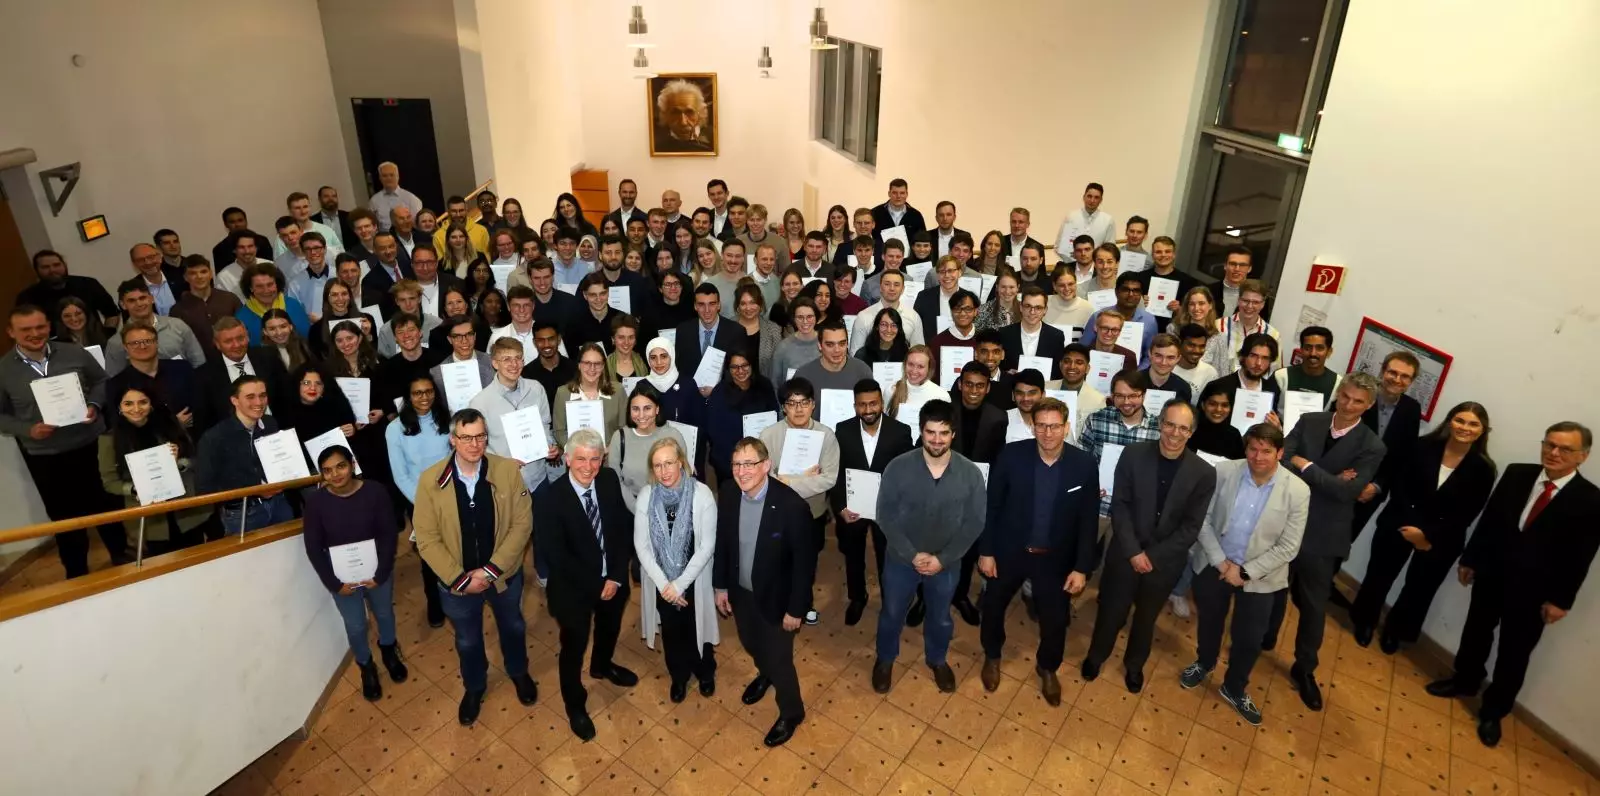 72 Bachelor- und 52 Masterstudierenden der TU Hamburg werden ein Jahr lang mit 300 Euro pro Monat unterstützt. Foto: Chrisitan Bittcher